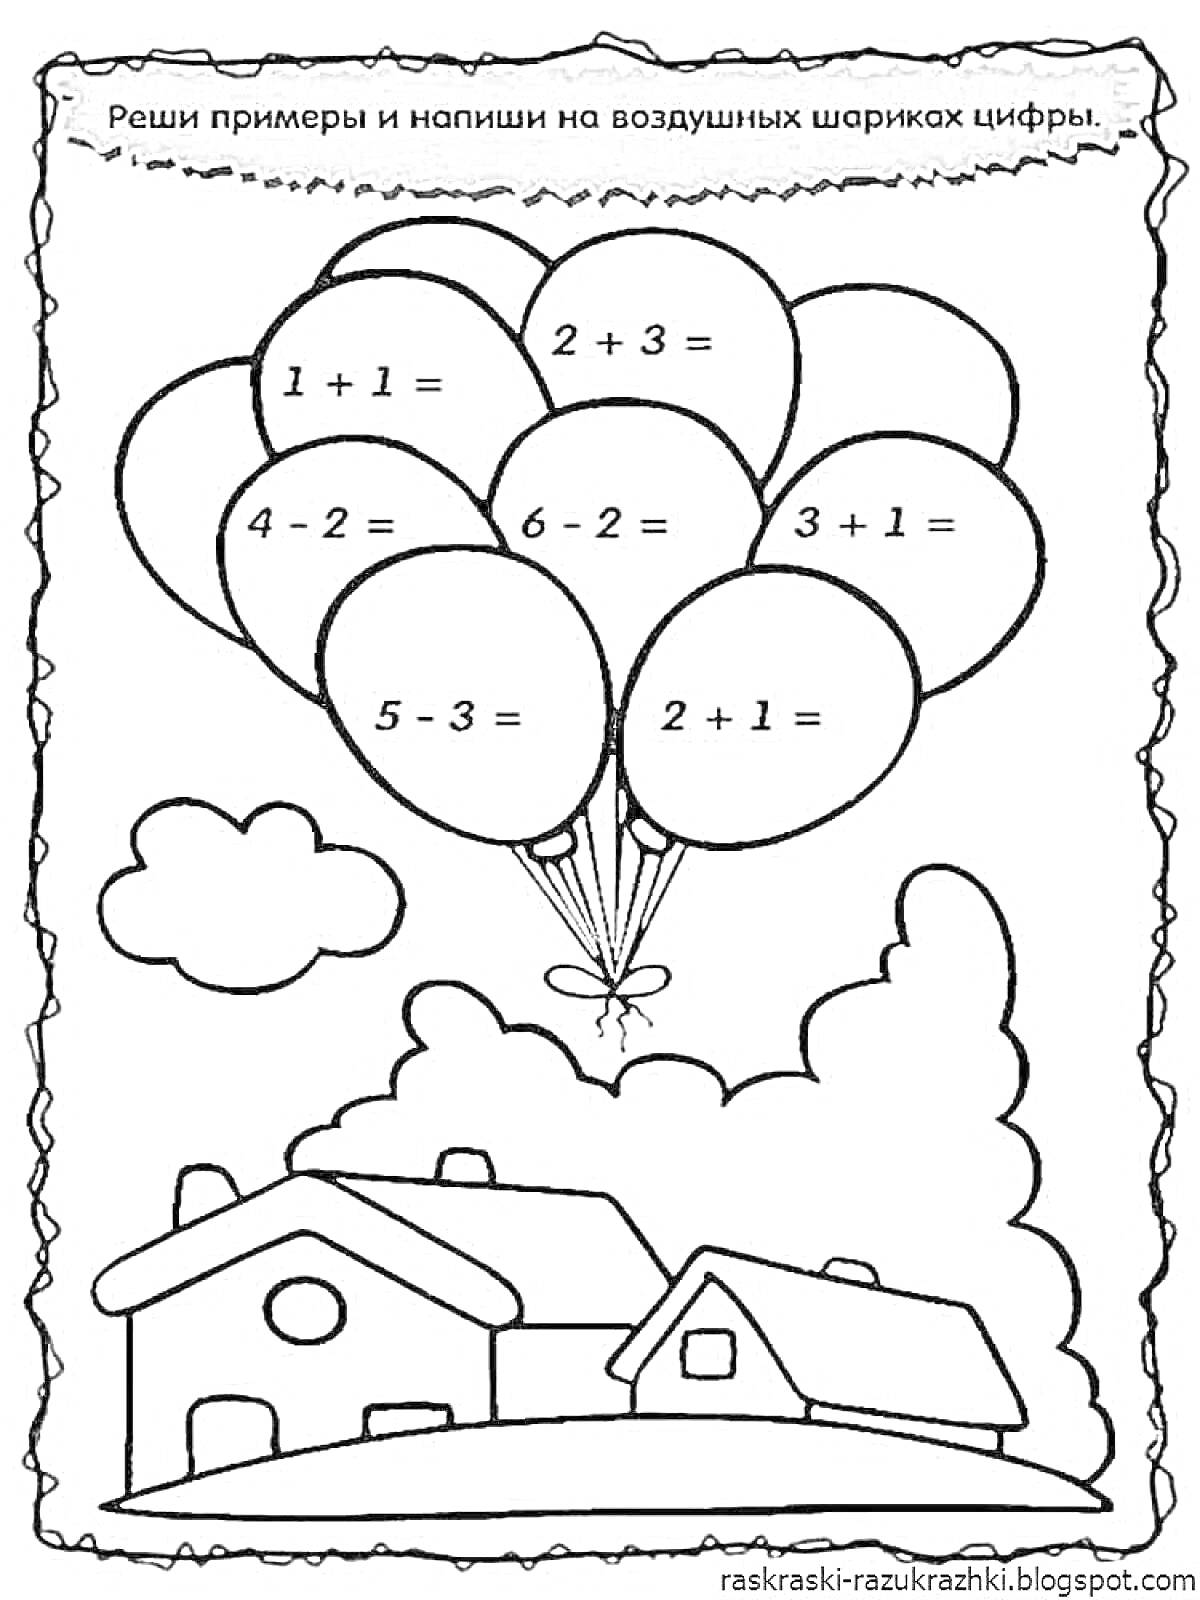 На раскраске изображено: Дошкольники, Задания, Математика, Примеры, Природа, Развивающие игры, Домик, Воздушные шары